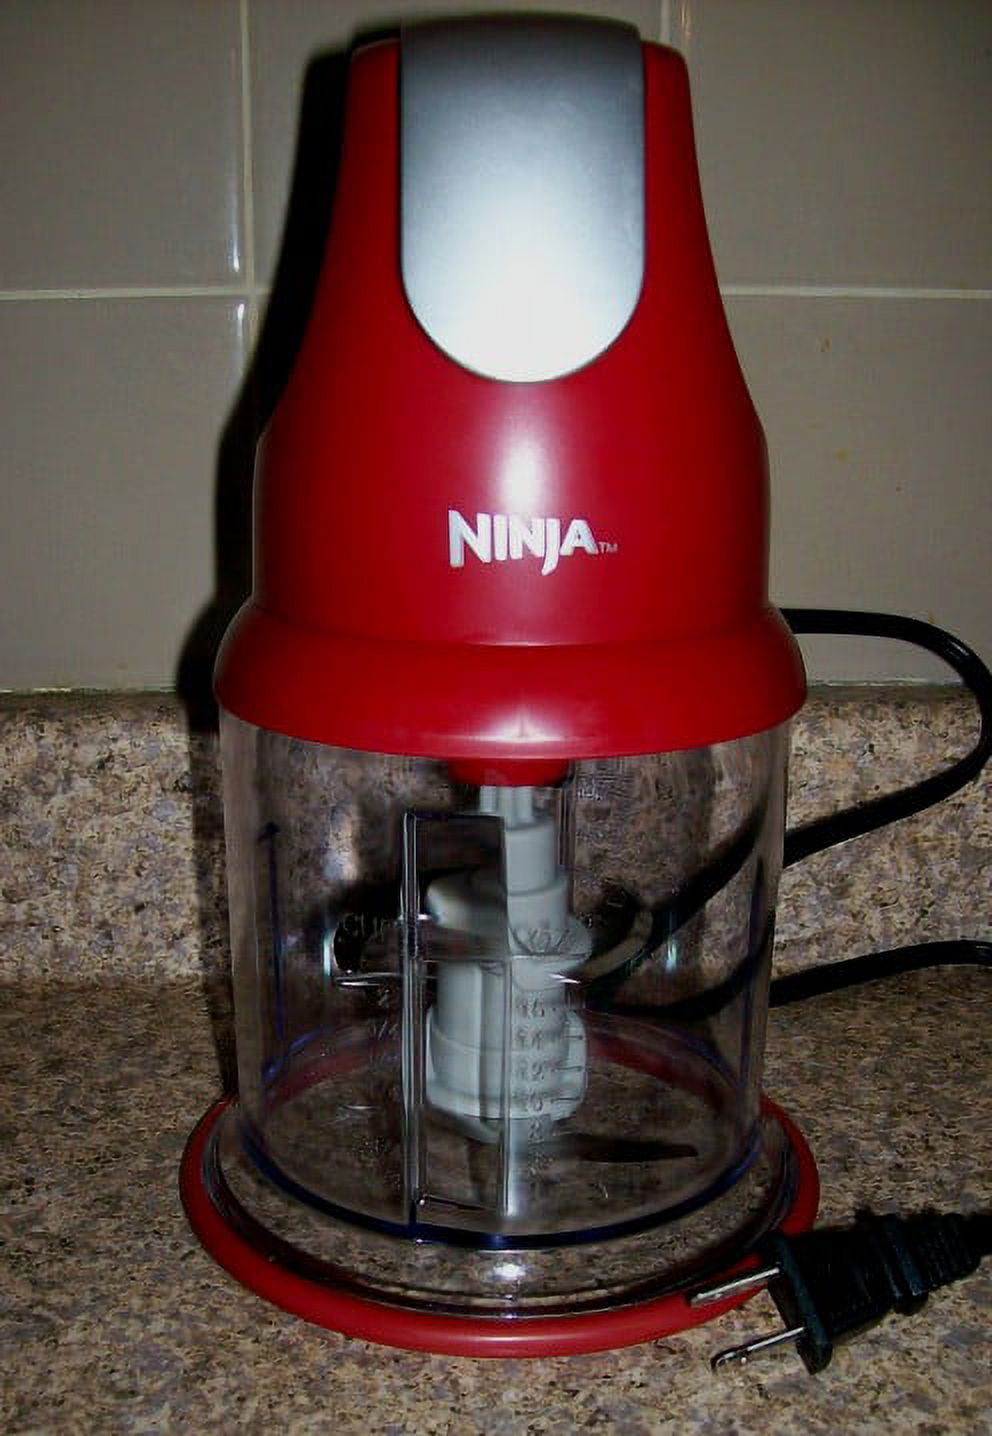 Ninja Express Chopper - Red (NJ100) 